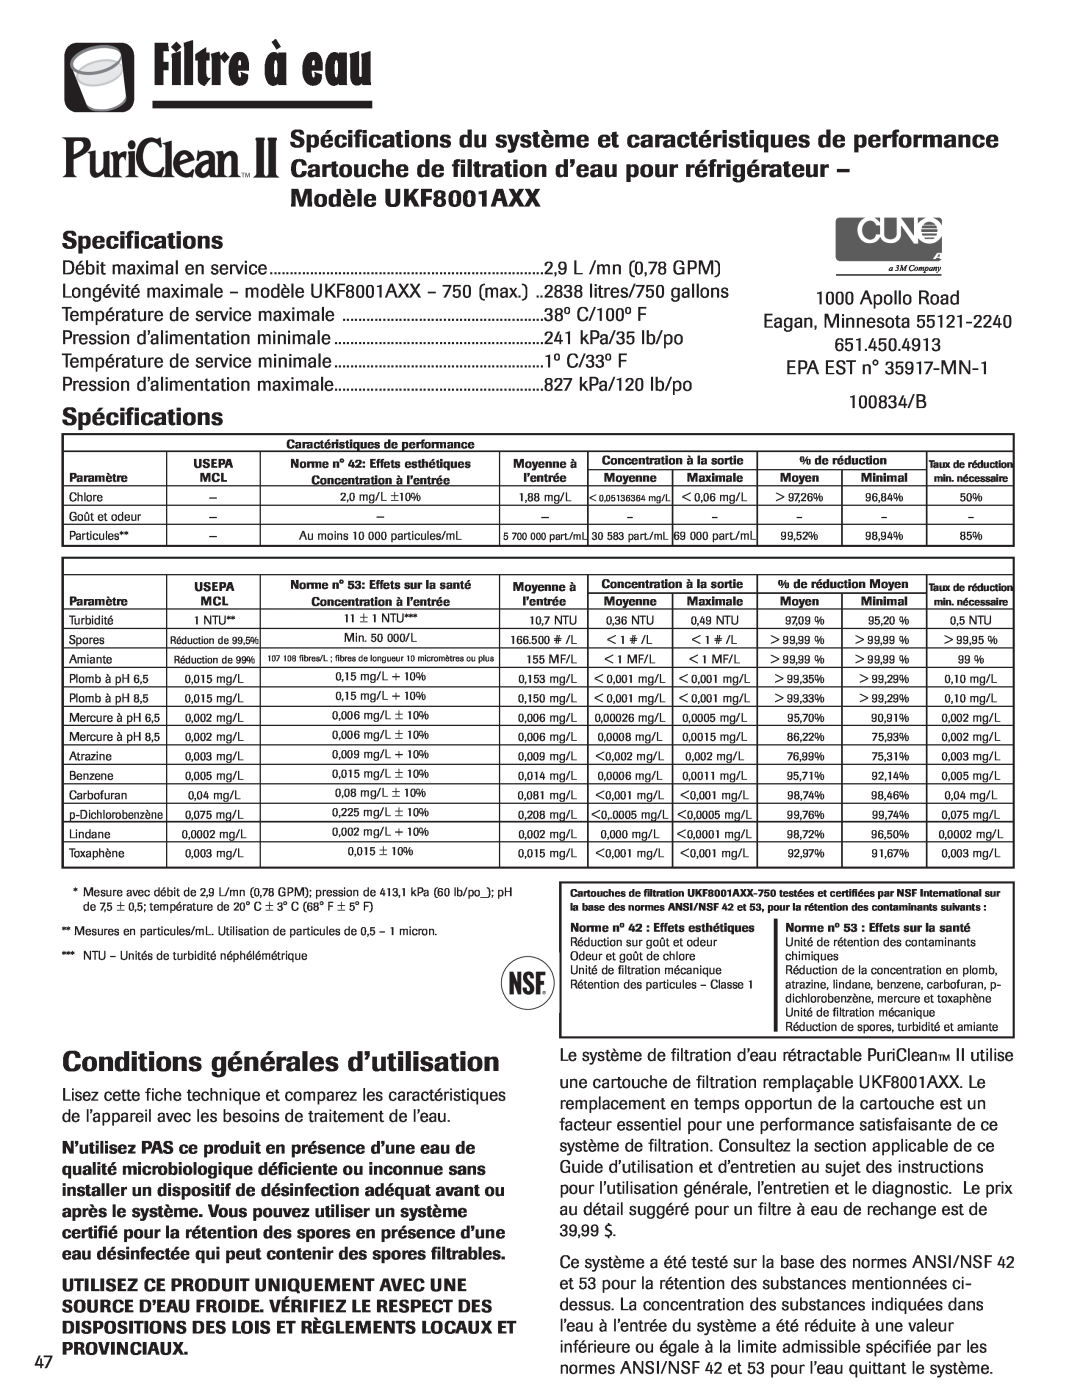 Maytag MFI2266AEW Conditions générales d’utilisation, Modèle UKF8001AXX, Spécifications, Filtre à eau, Specifications 